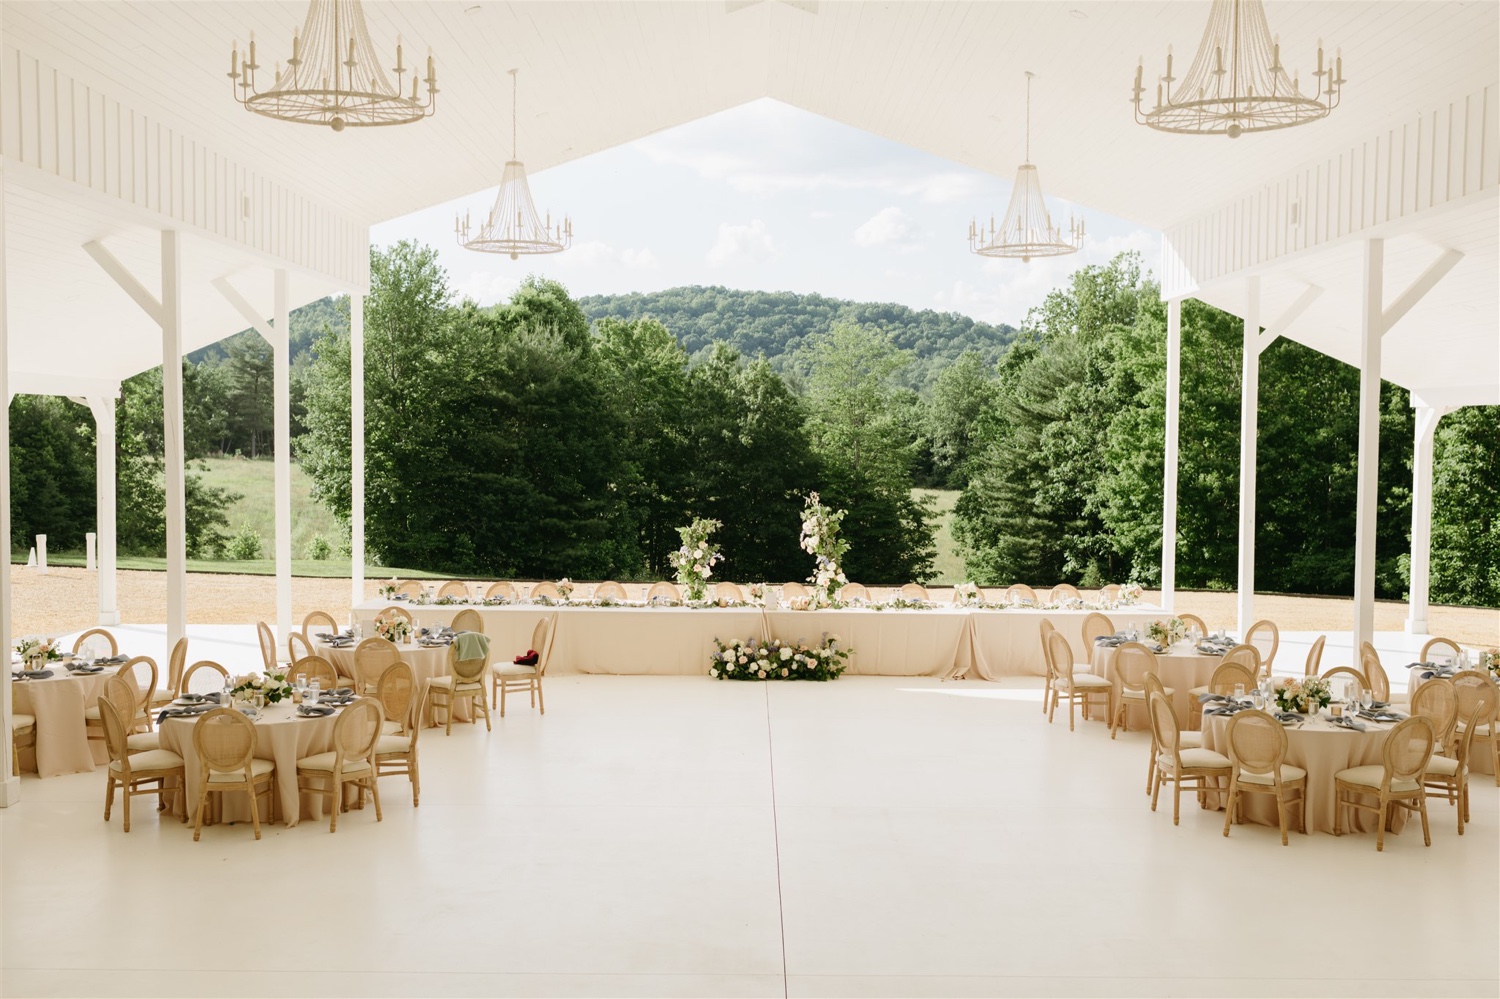 ivy rose barn wedding reception venue florals centerpieces